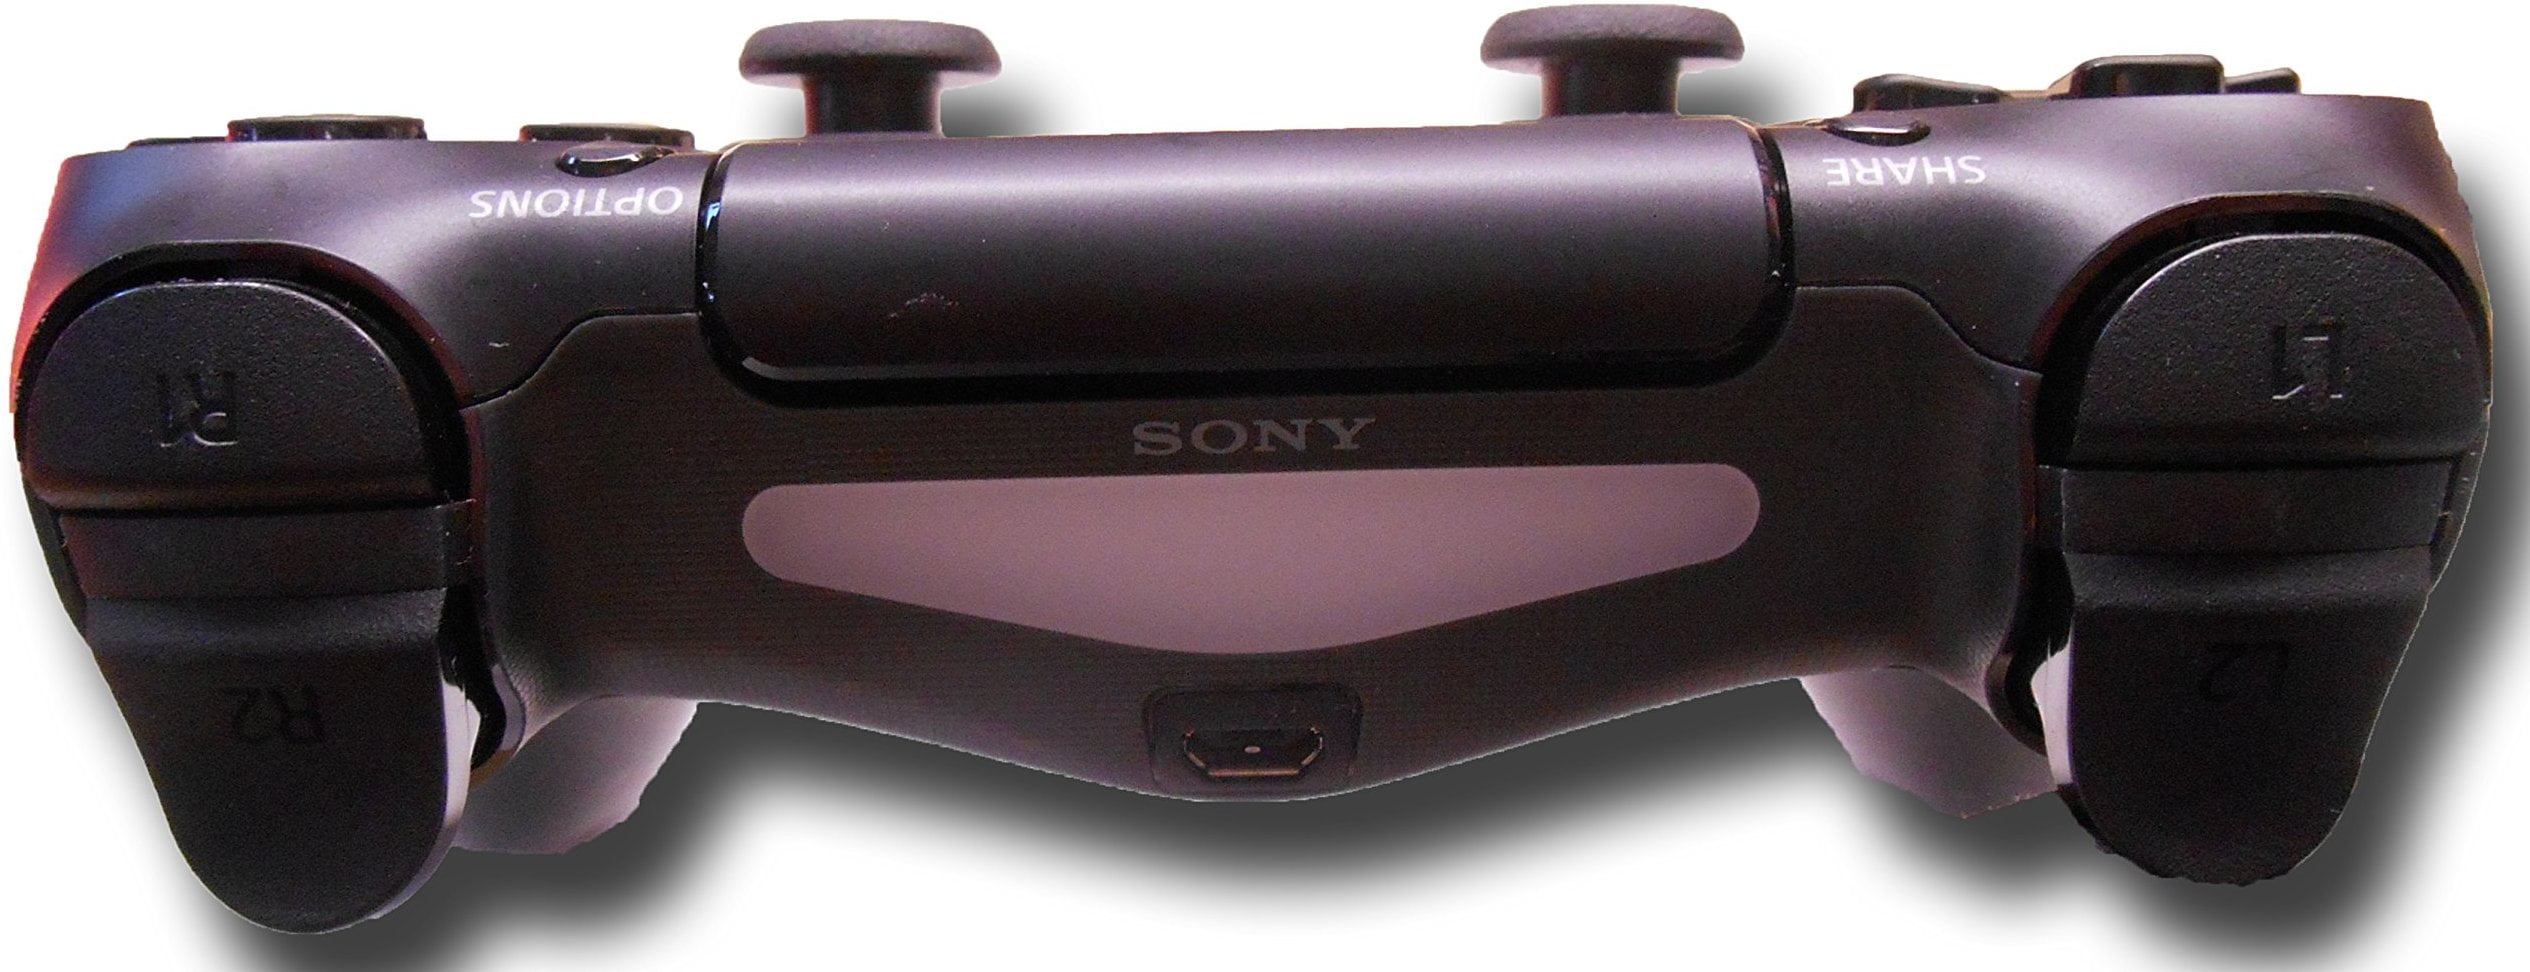 テレビ/映像機器 その他 Sony PlayStation 4 PS4 DualShock 4 Wireless Controller CUH-ZCT1U - Black -  USED